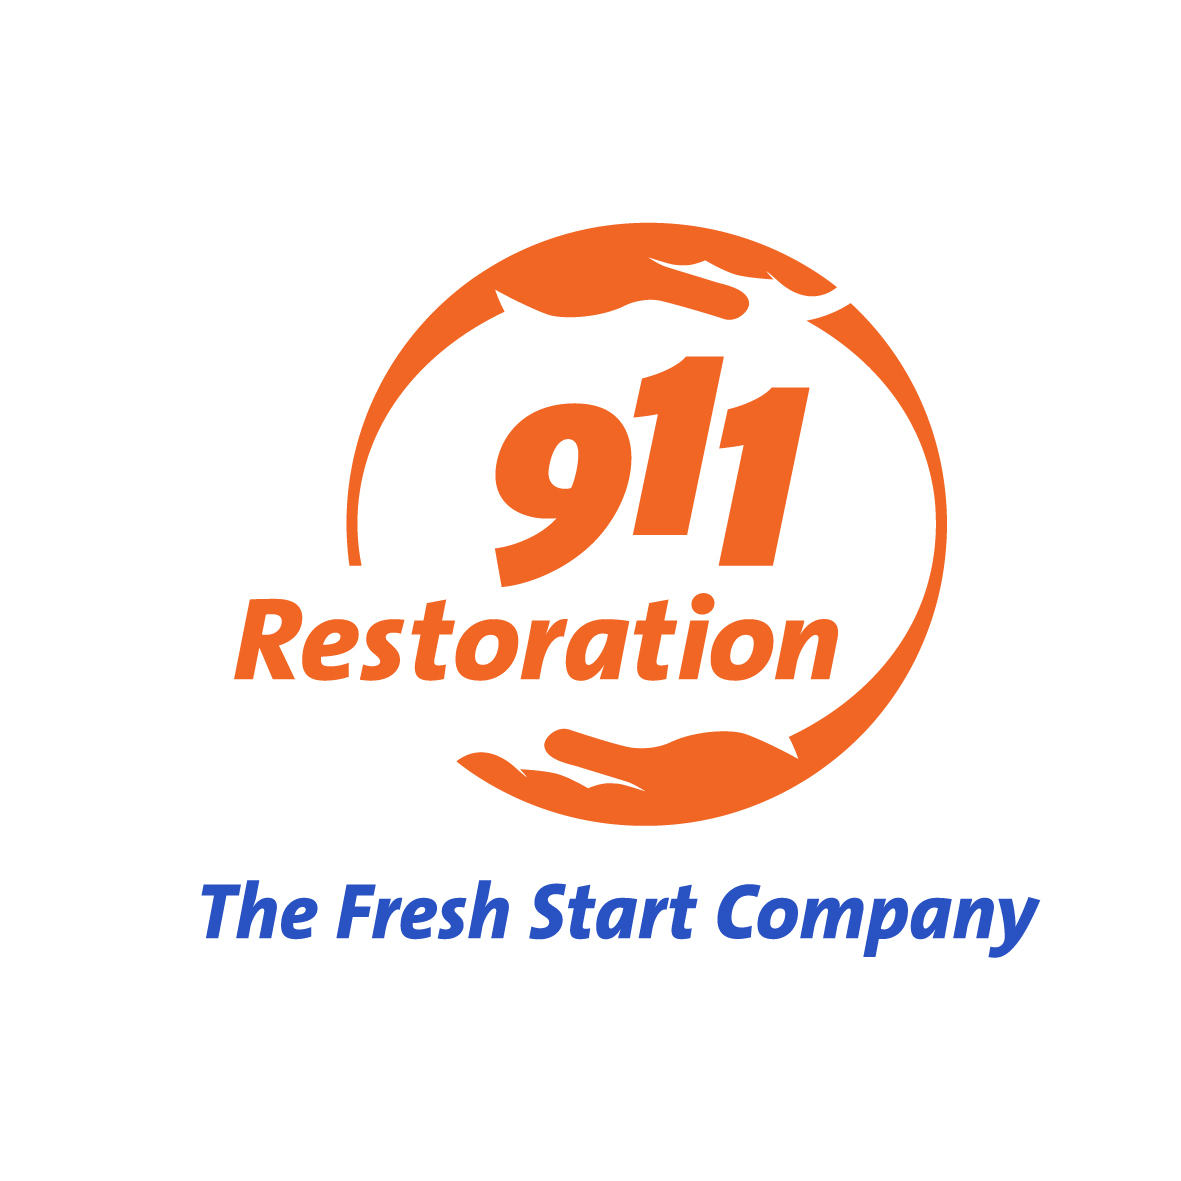 911 Restoration of Ventura, Santa Barbara, & San Luis Obispo